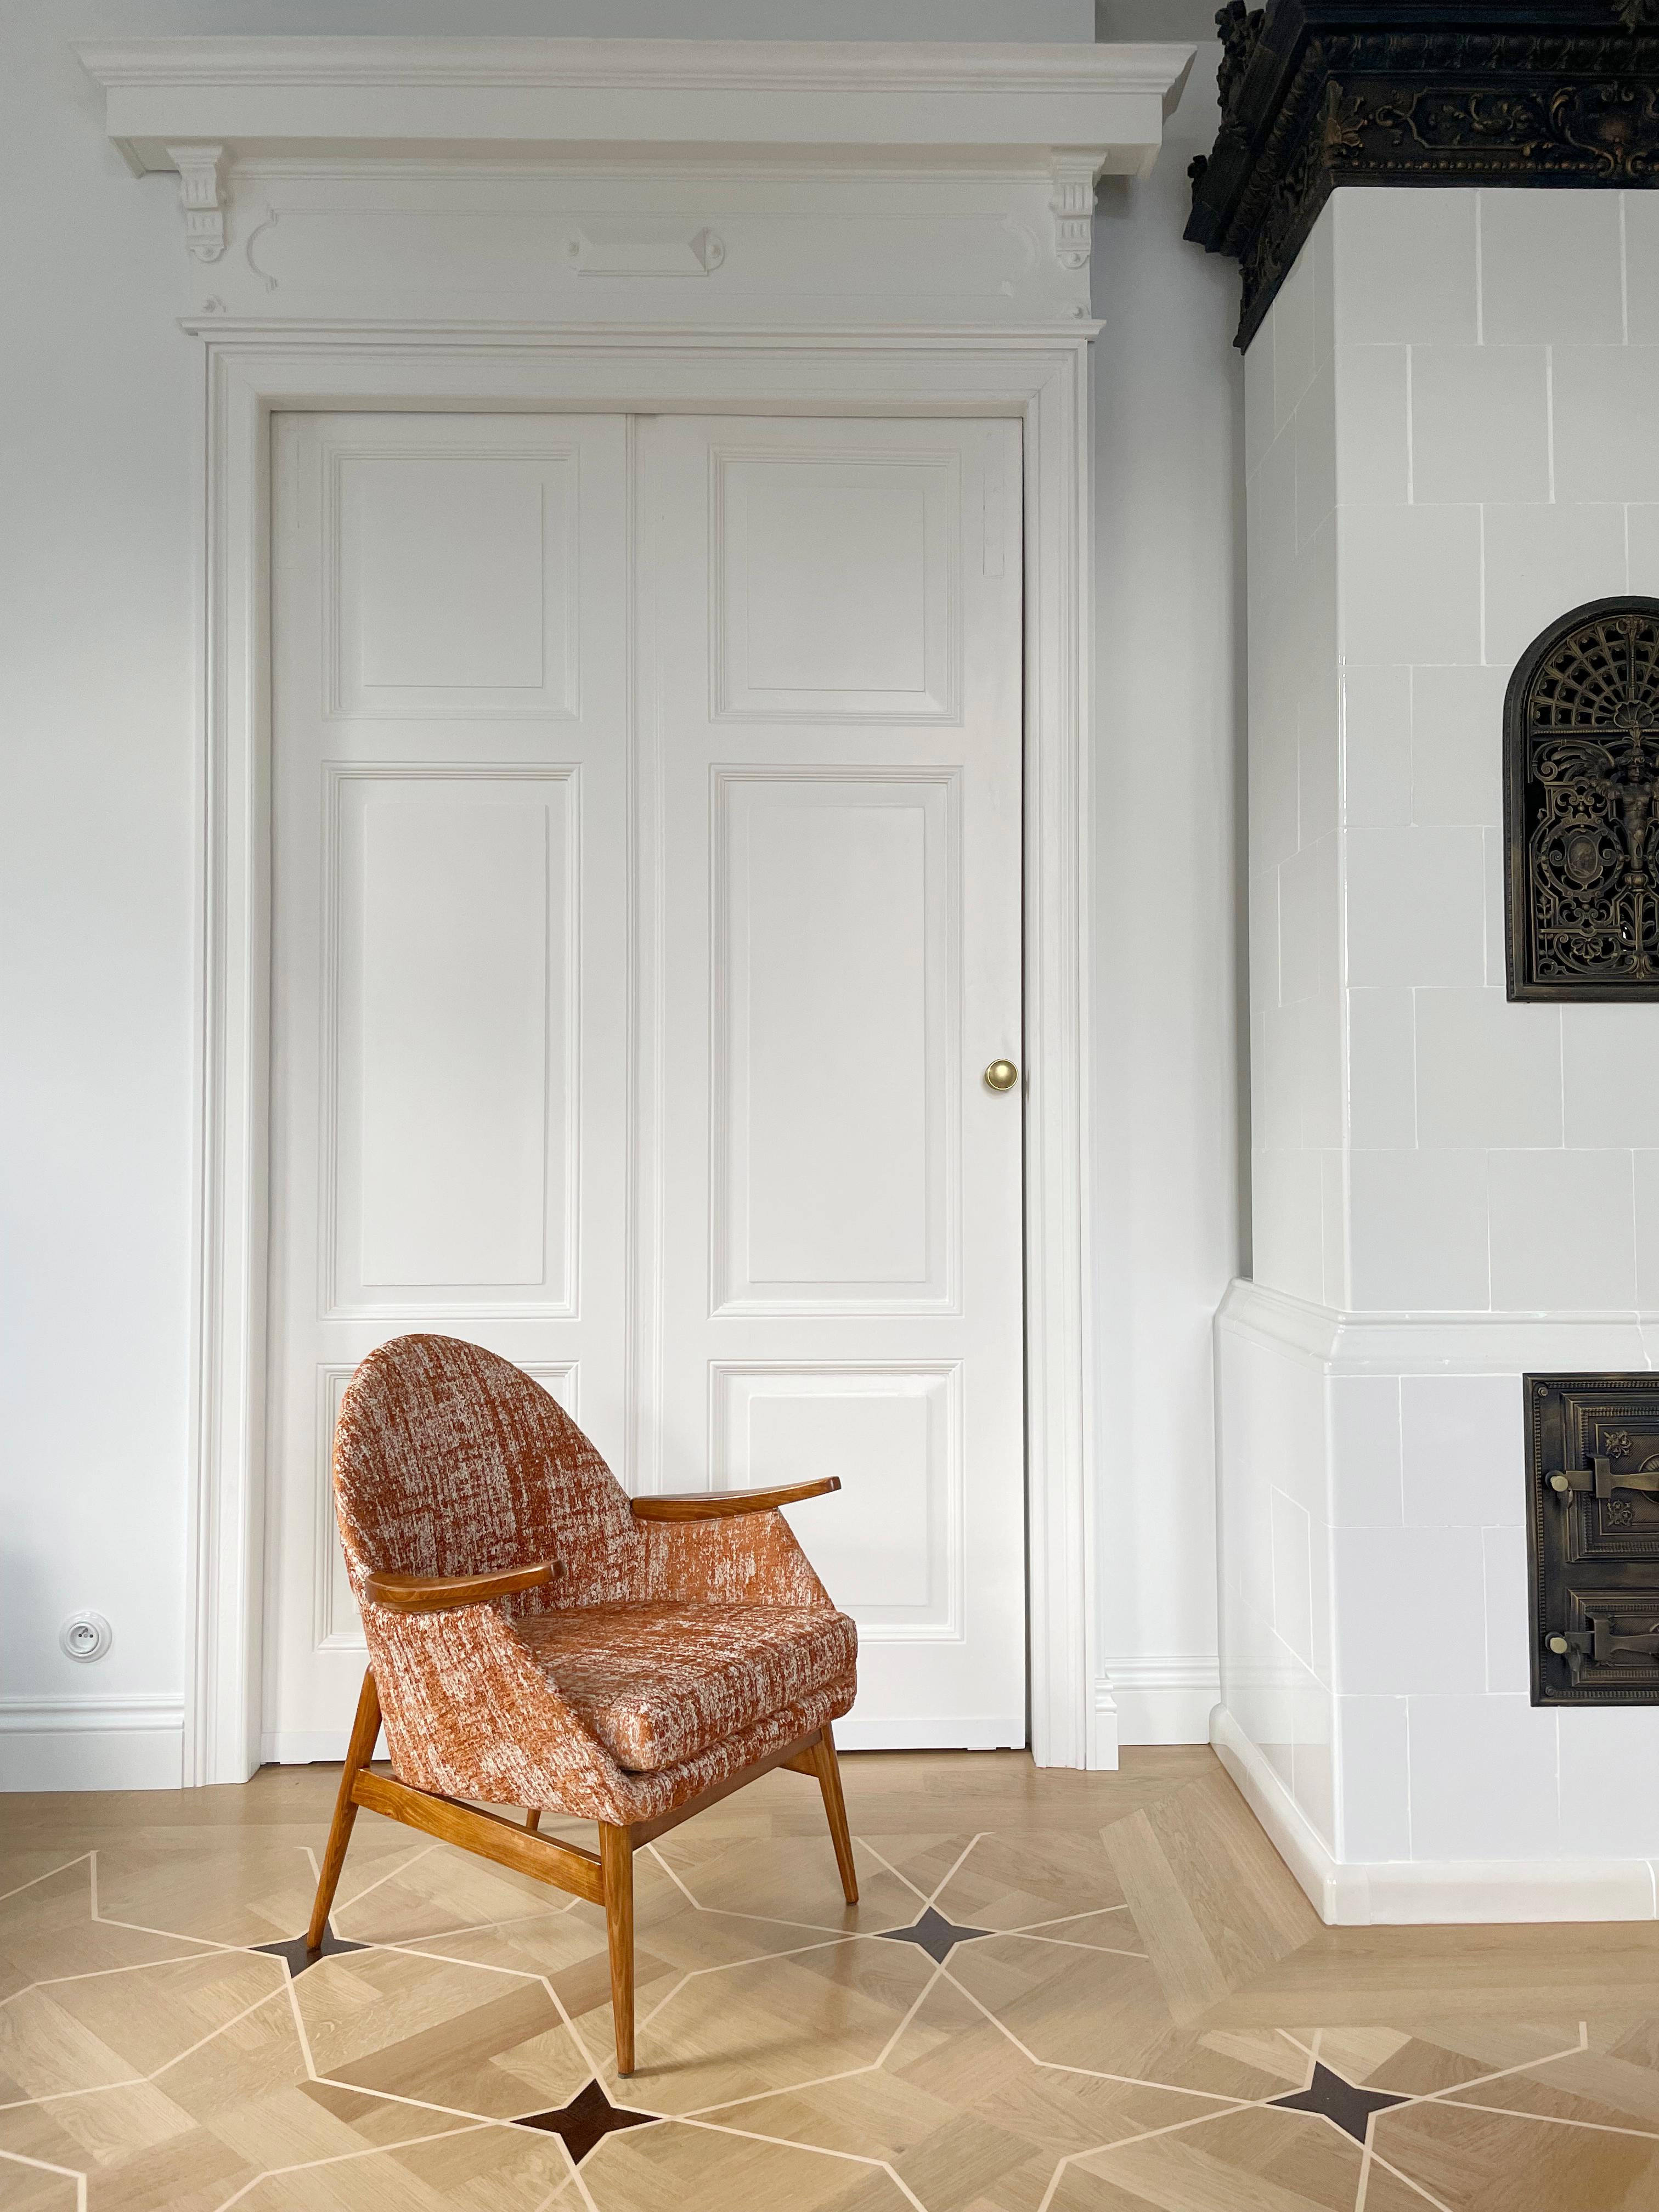 Schöner Sessel aus rotem Boucle-Stoff, entworfen von Julia Gaubek, einer polnischen Architektin, Designerin für Industriedesign und Innenarchitektur, Professorin an der Akademie der Schönen Künste in Danzig.

Die Sessel wurden in den 1960er Jahren